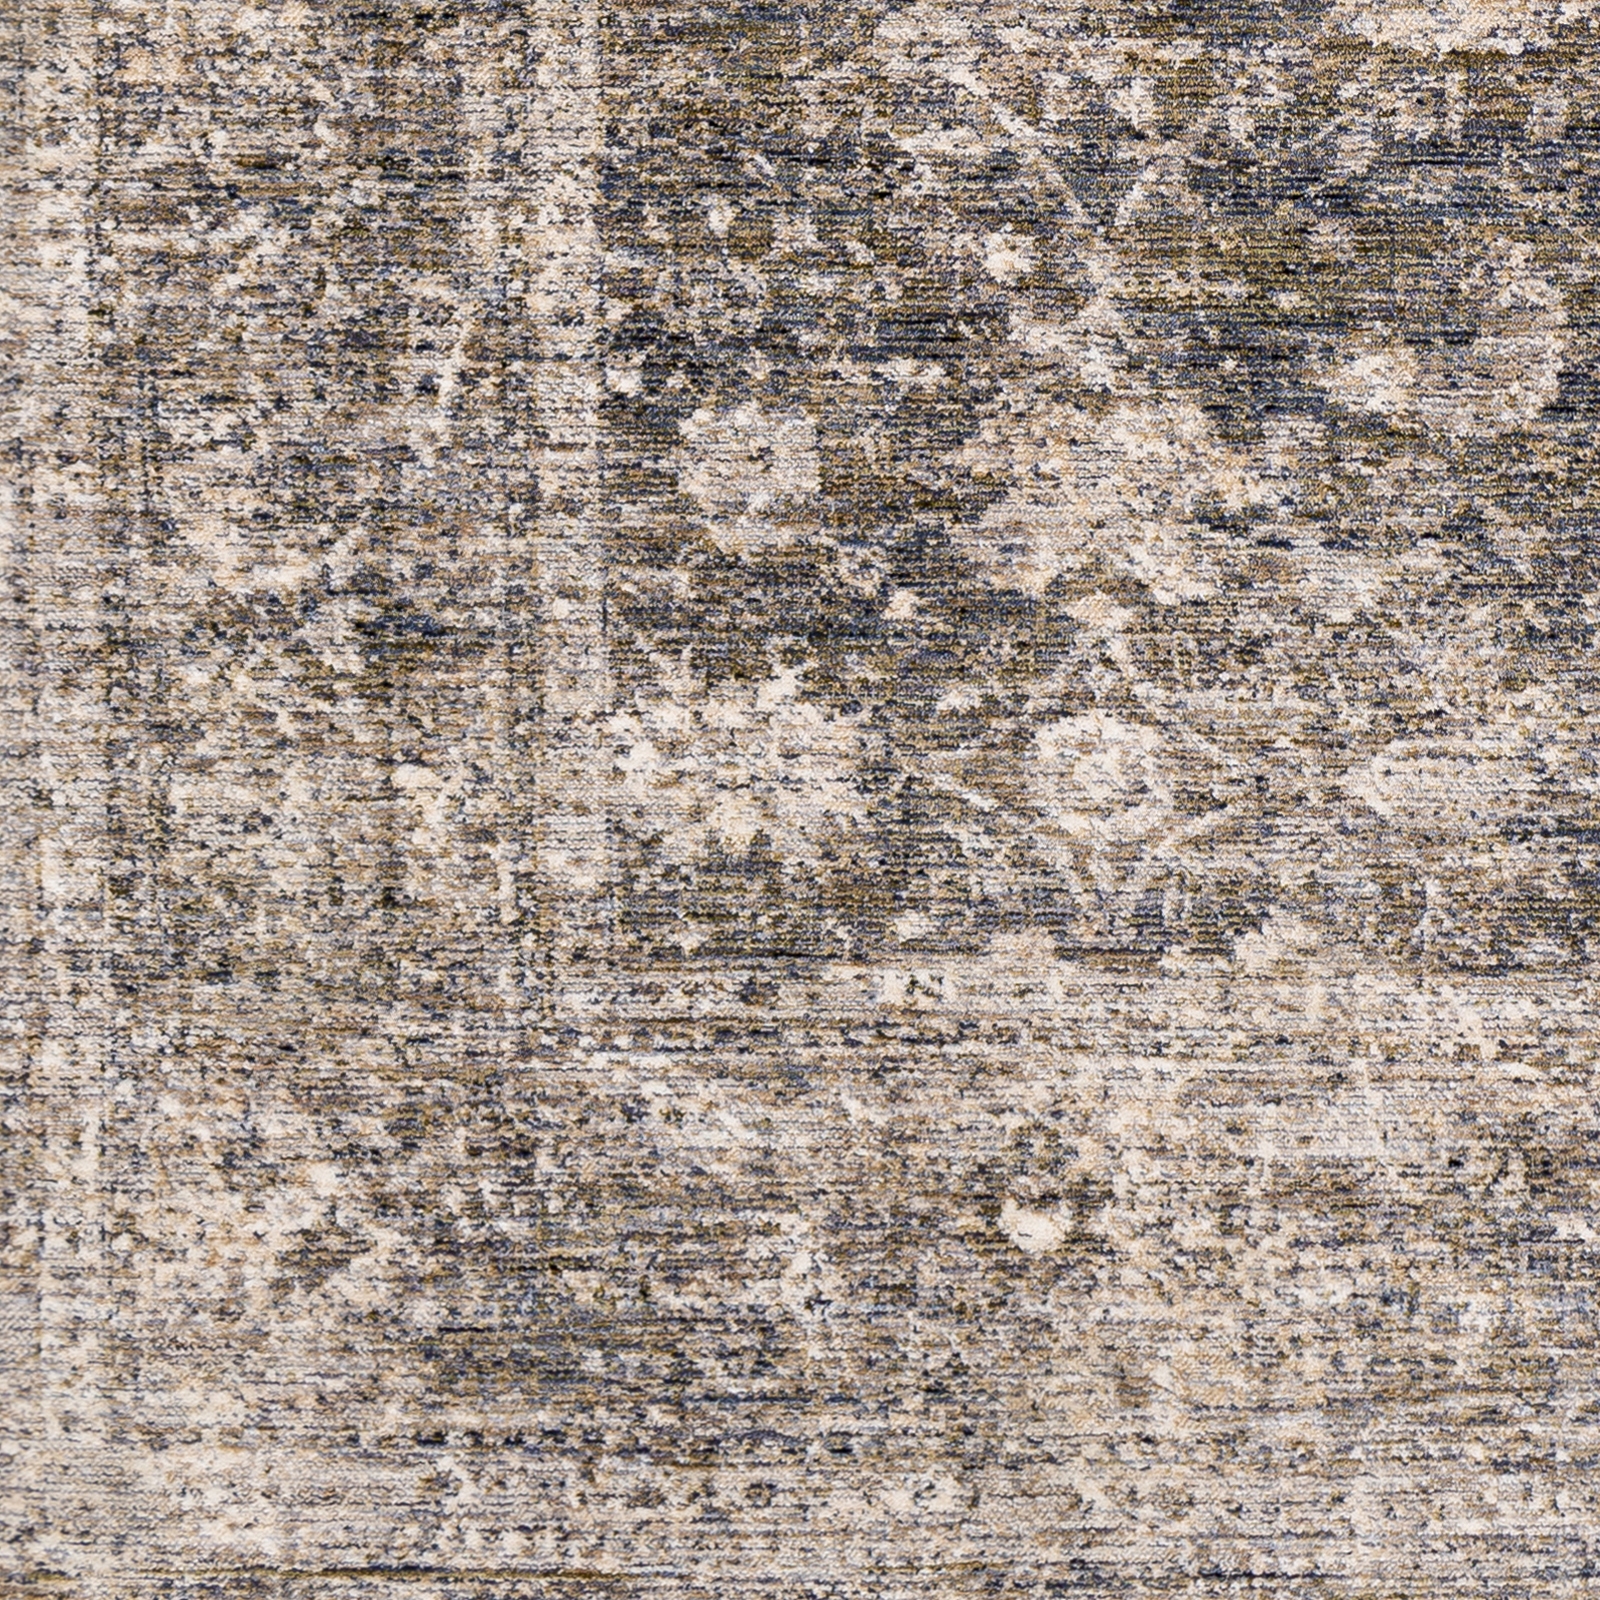 Lincoln Rug, 8' x 10' - Image 2